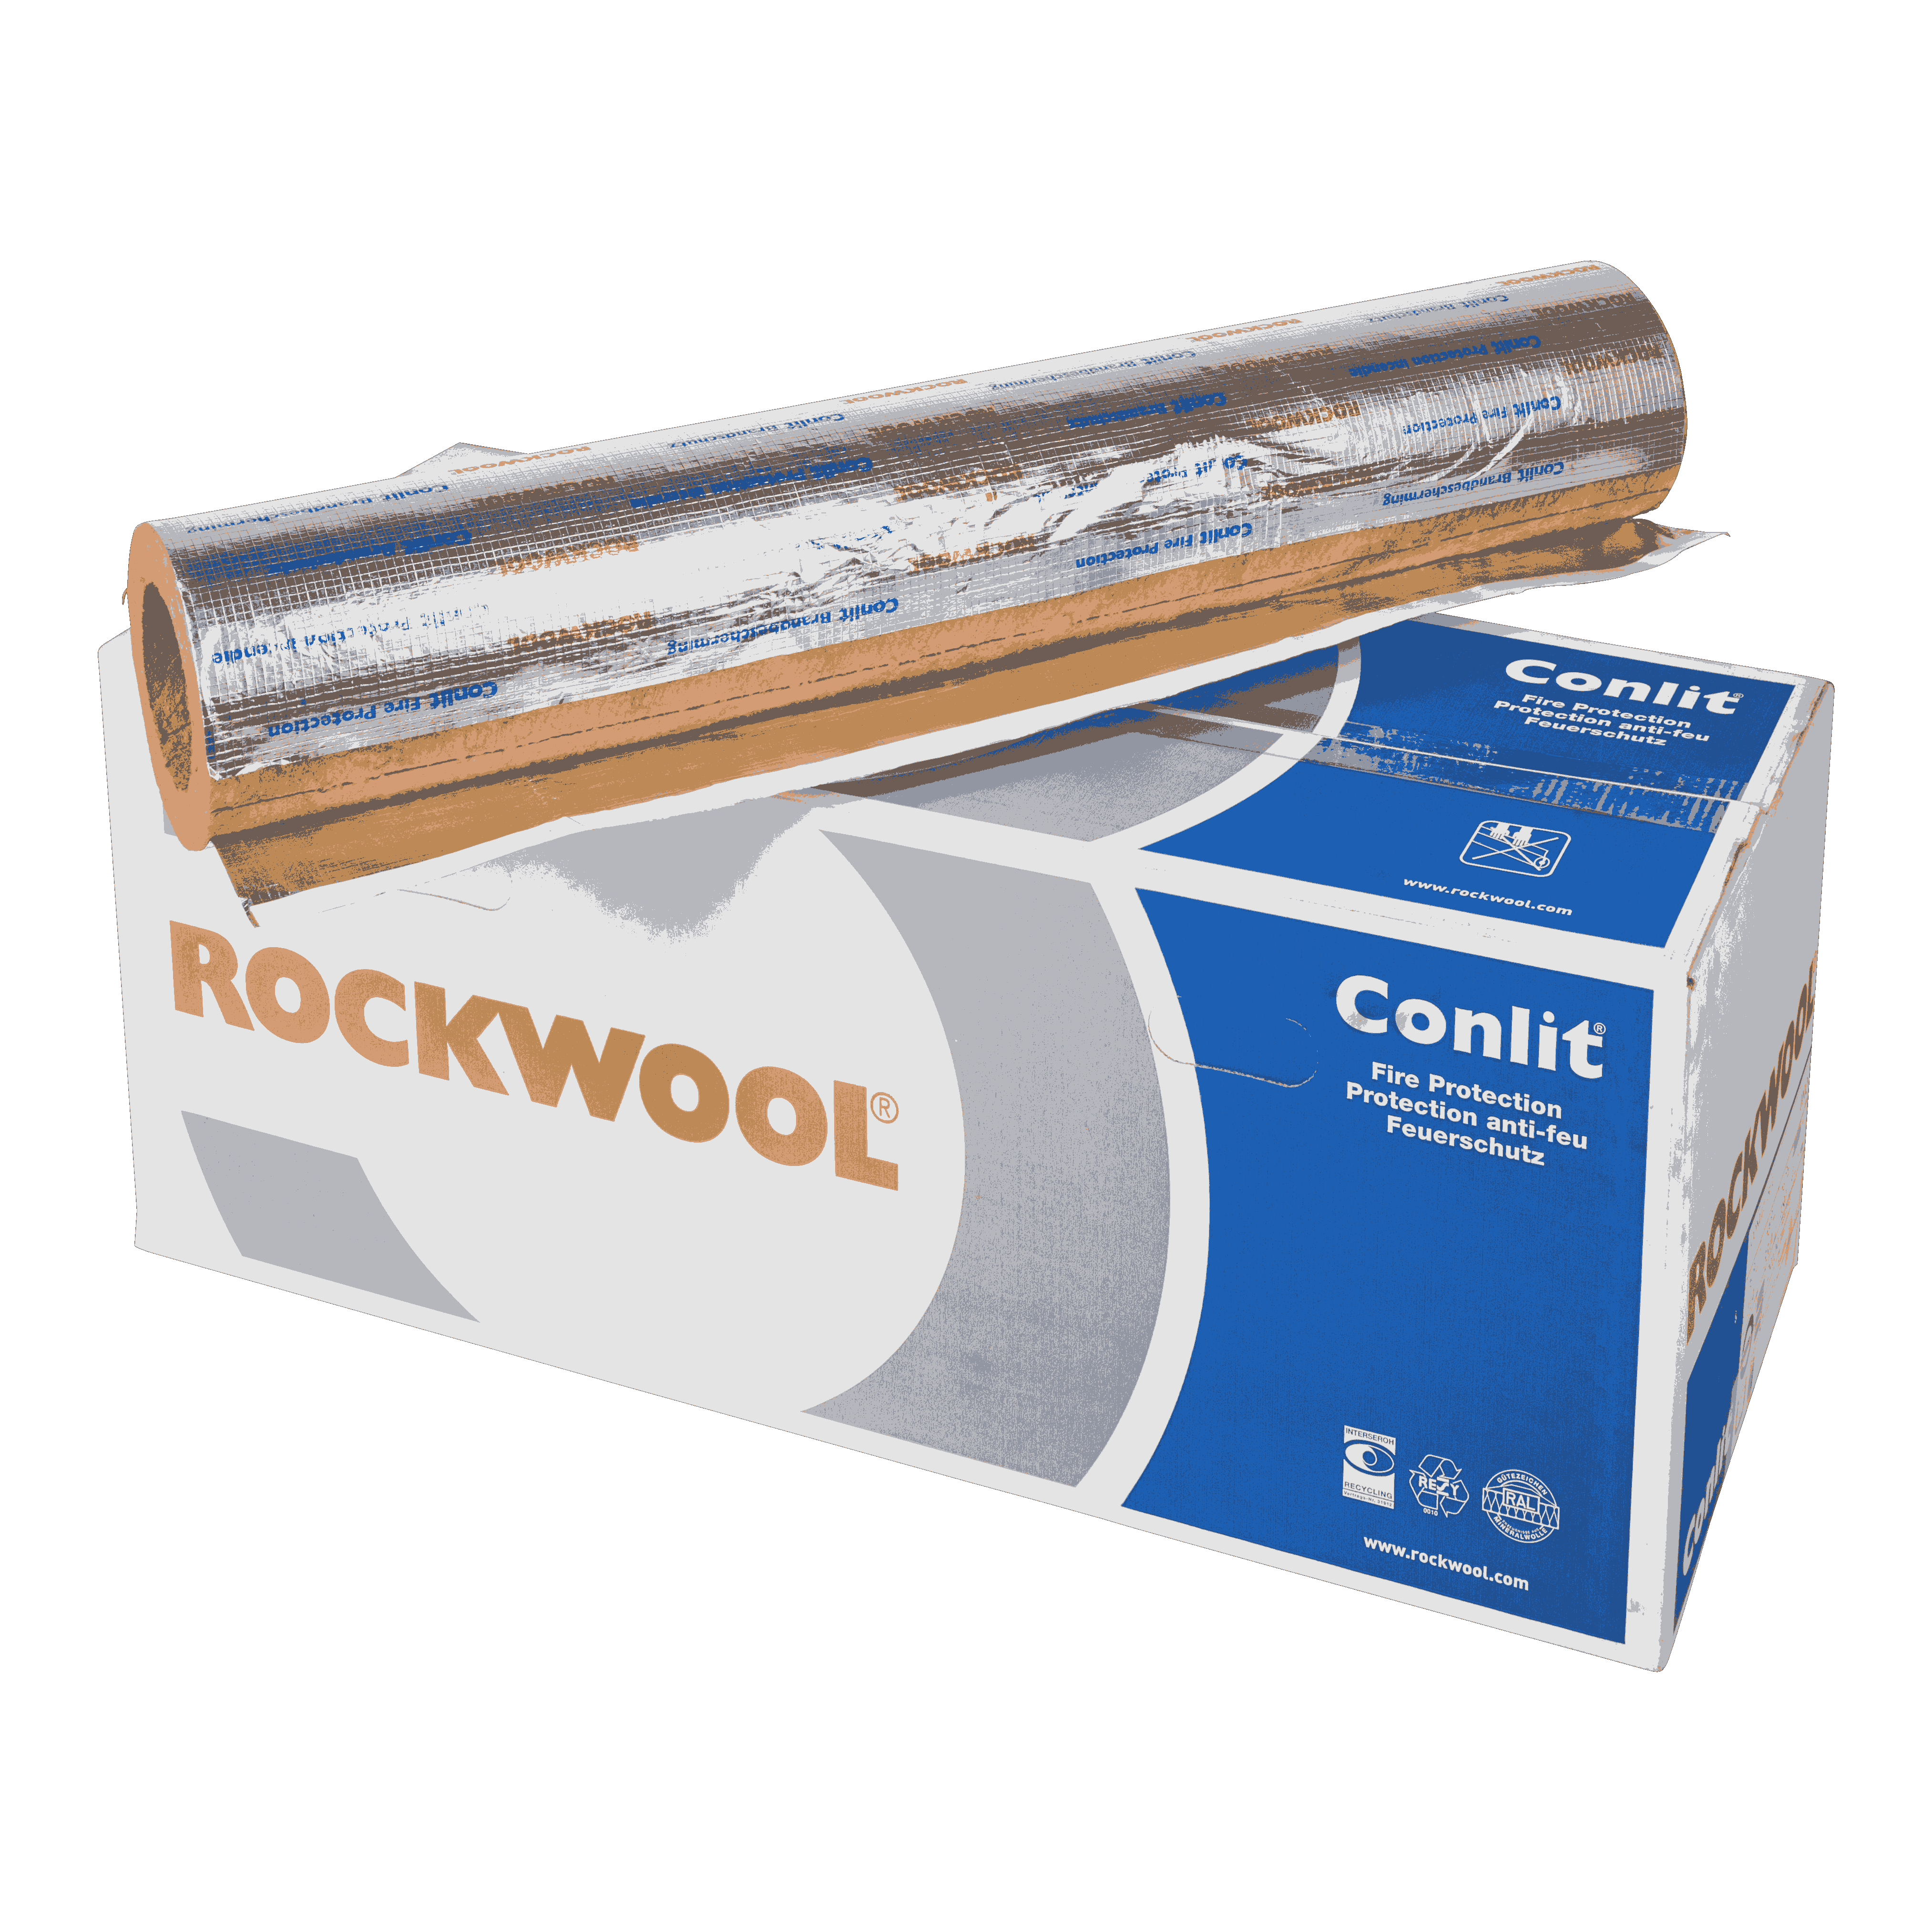 Rockwool Conlit 150 U pipe section